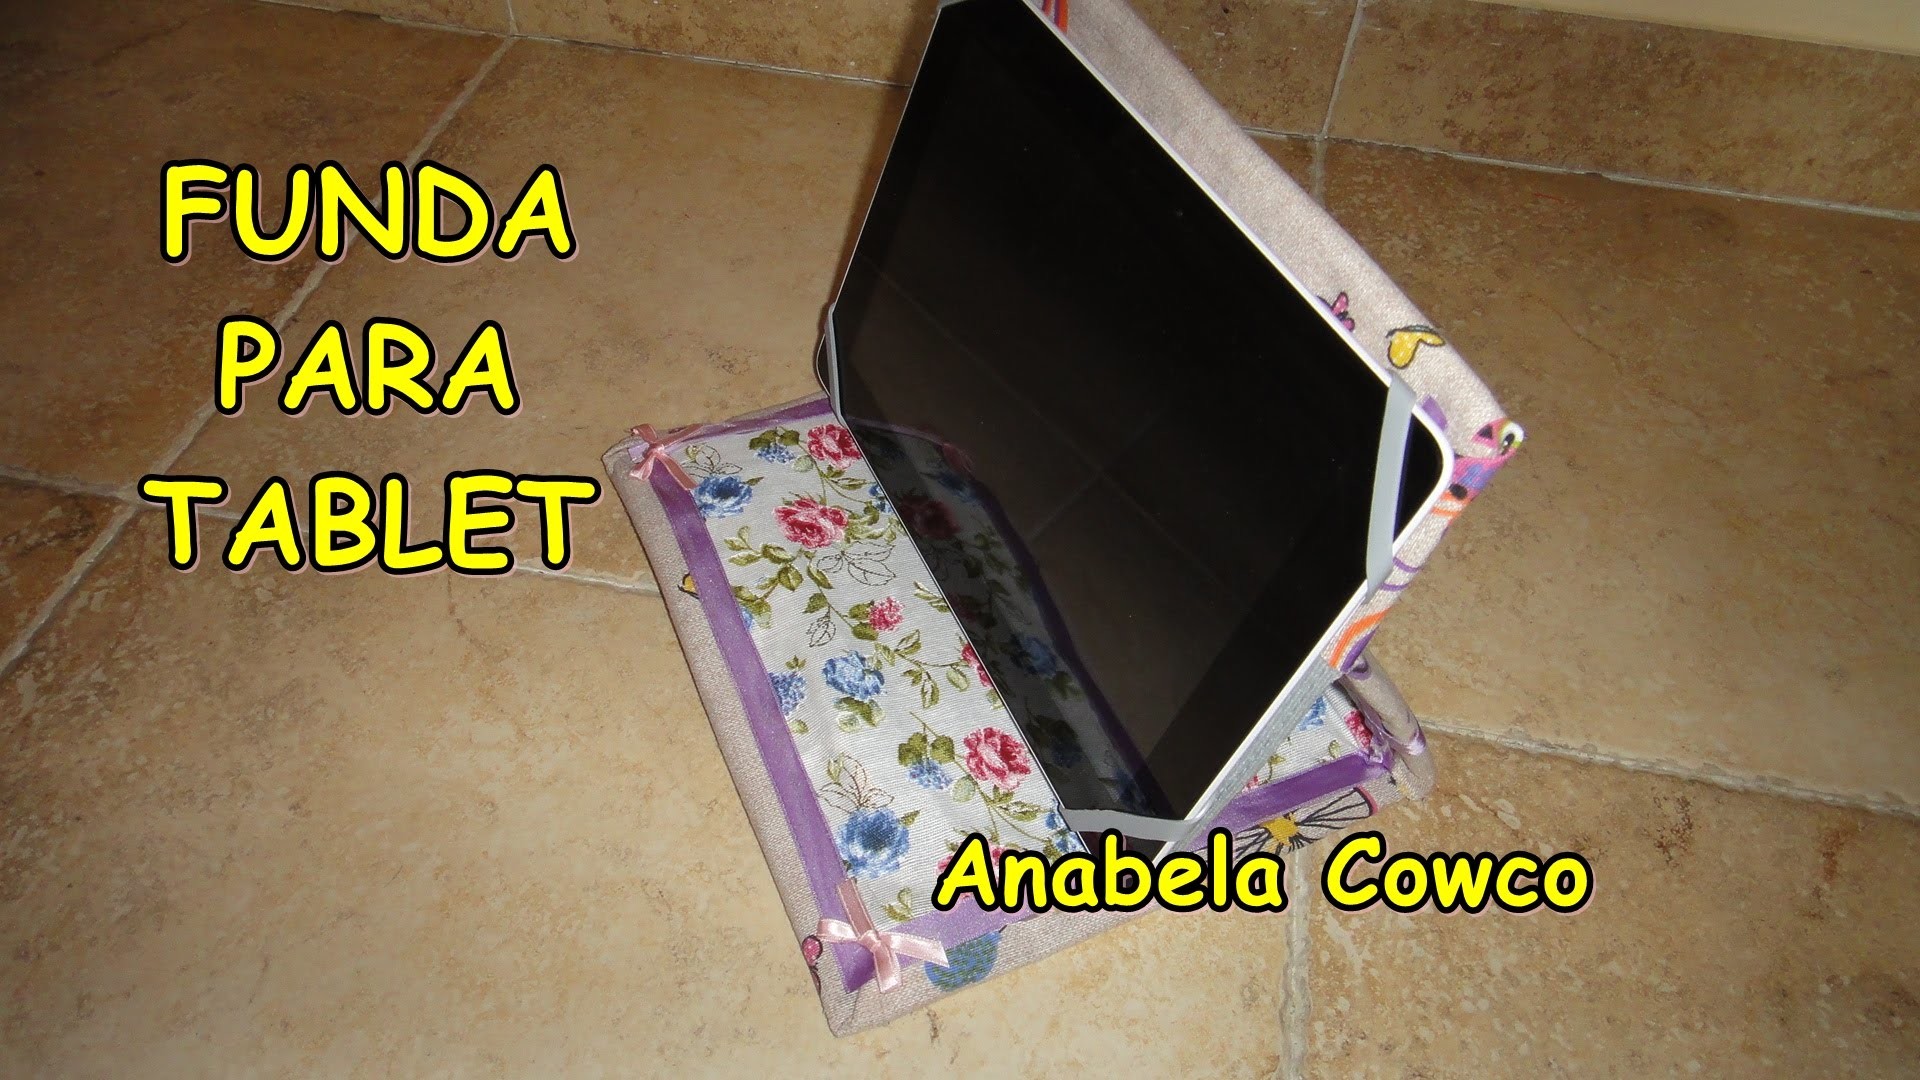 Cómo hacer. renovar tu funda para tablet by Anabela cowco